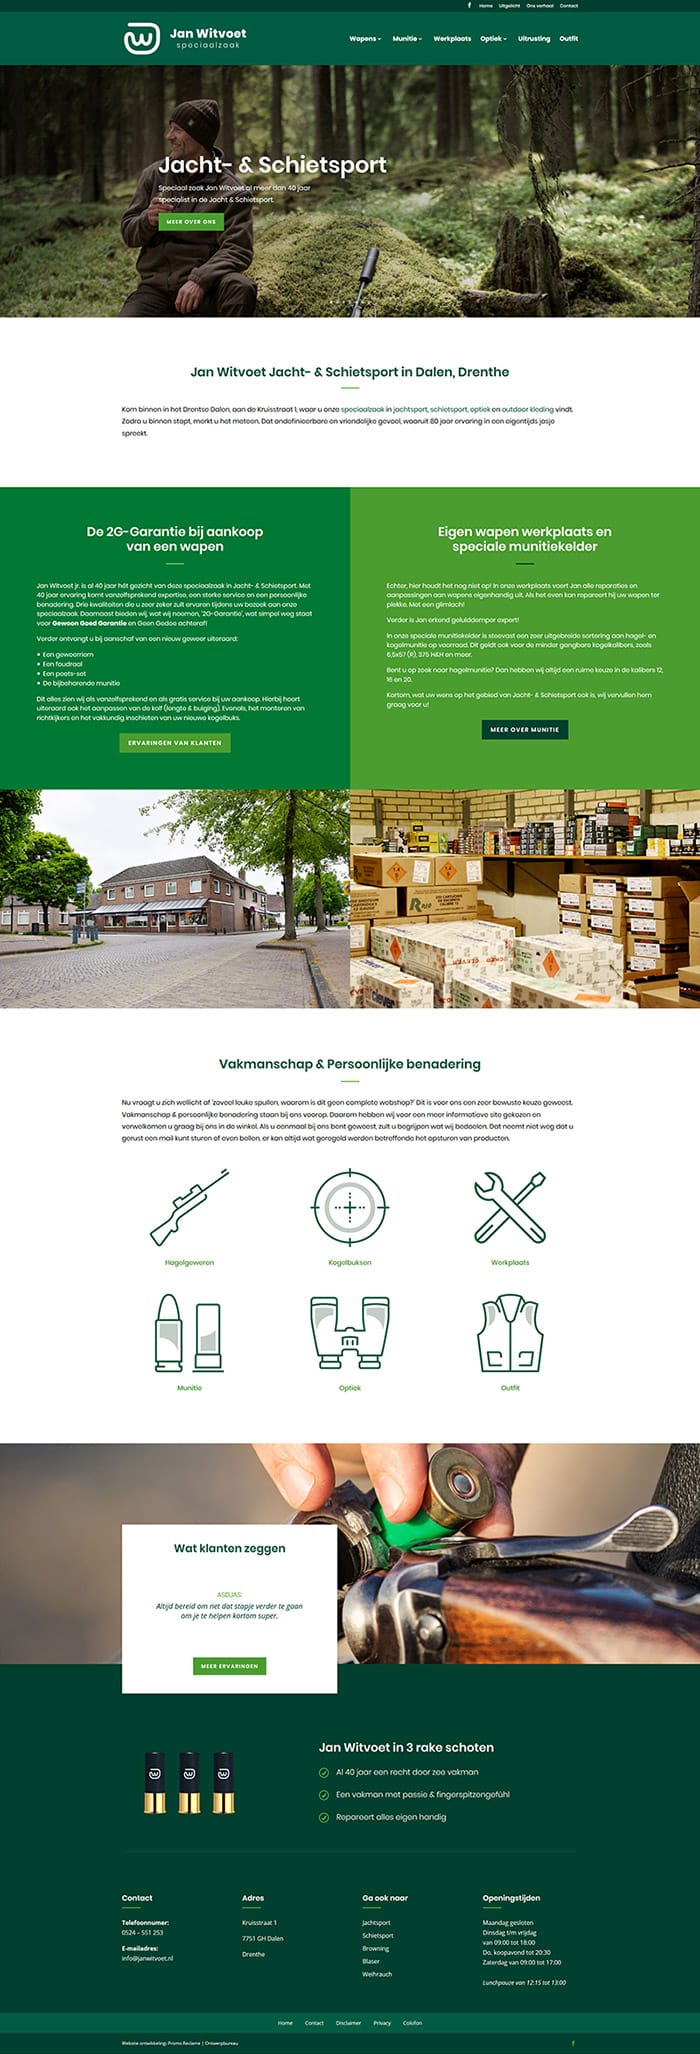 Website ontwikkeling Jan Witvoet - Jacht- & Schietsport